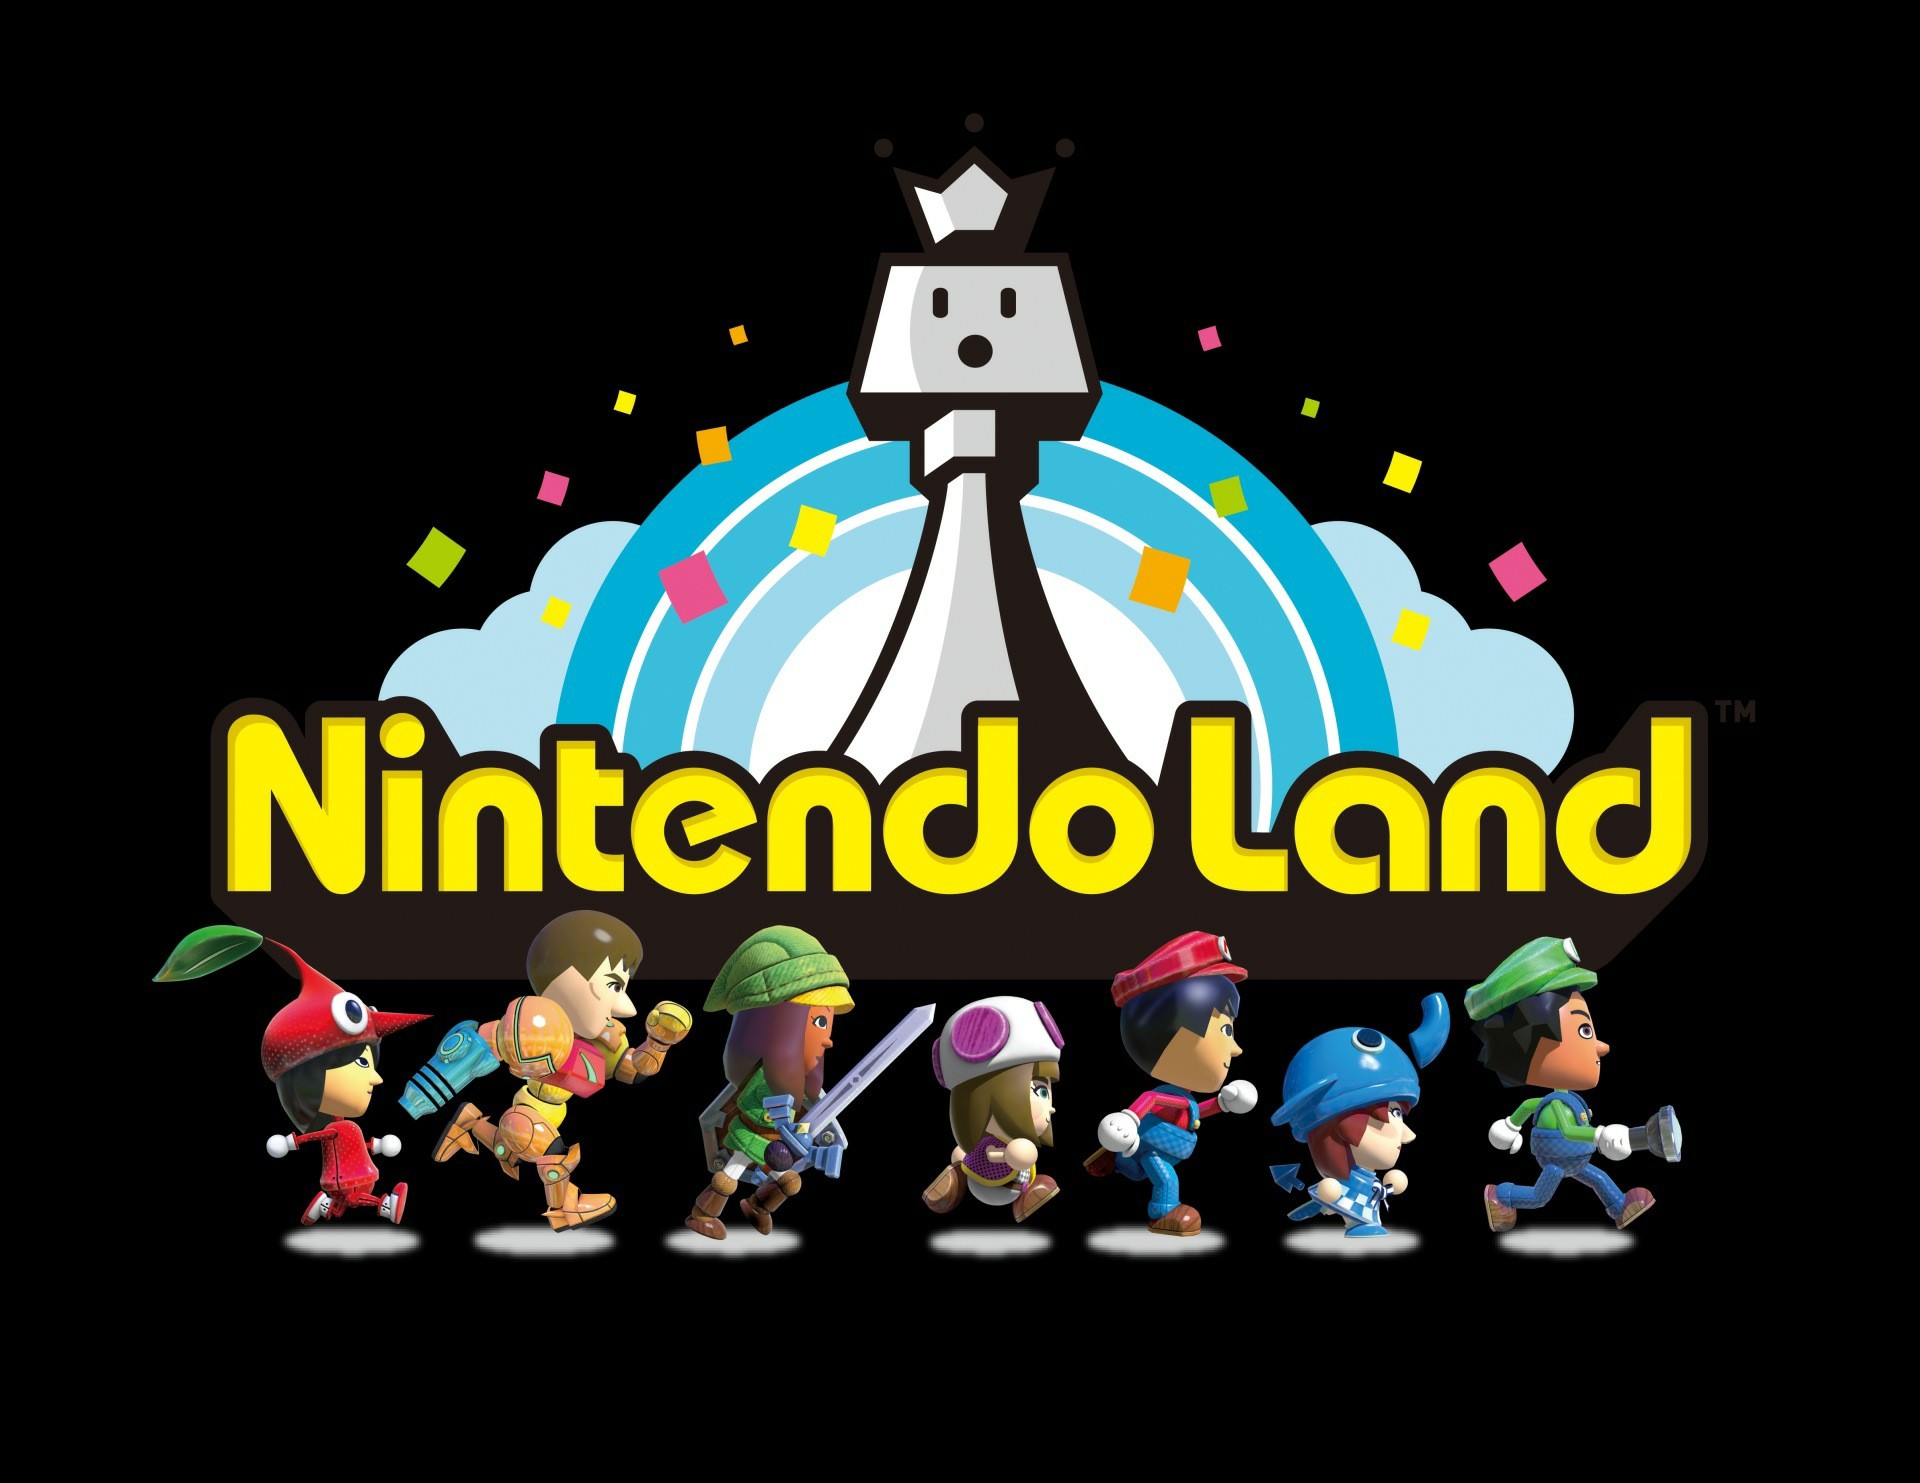 Nintendo land